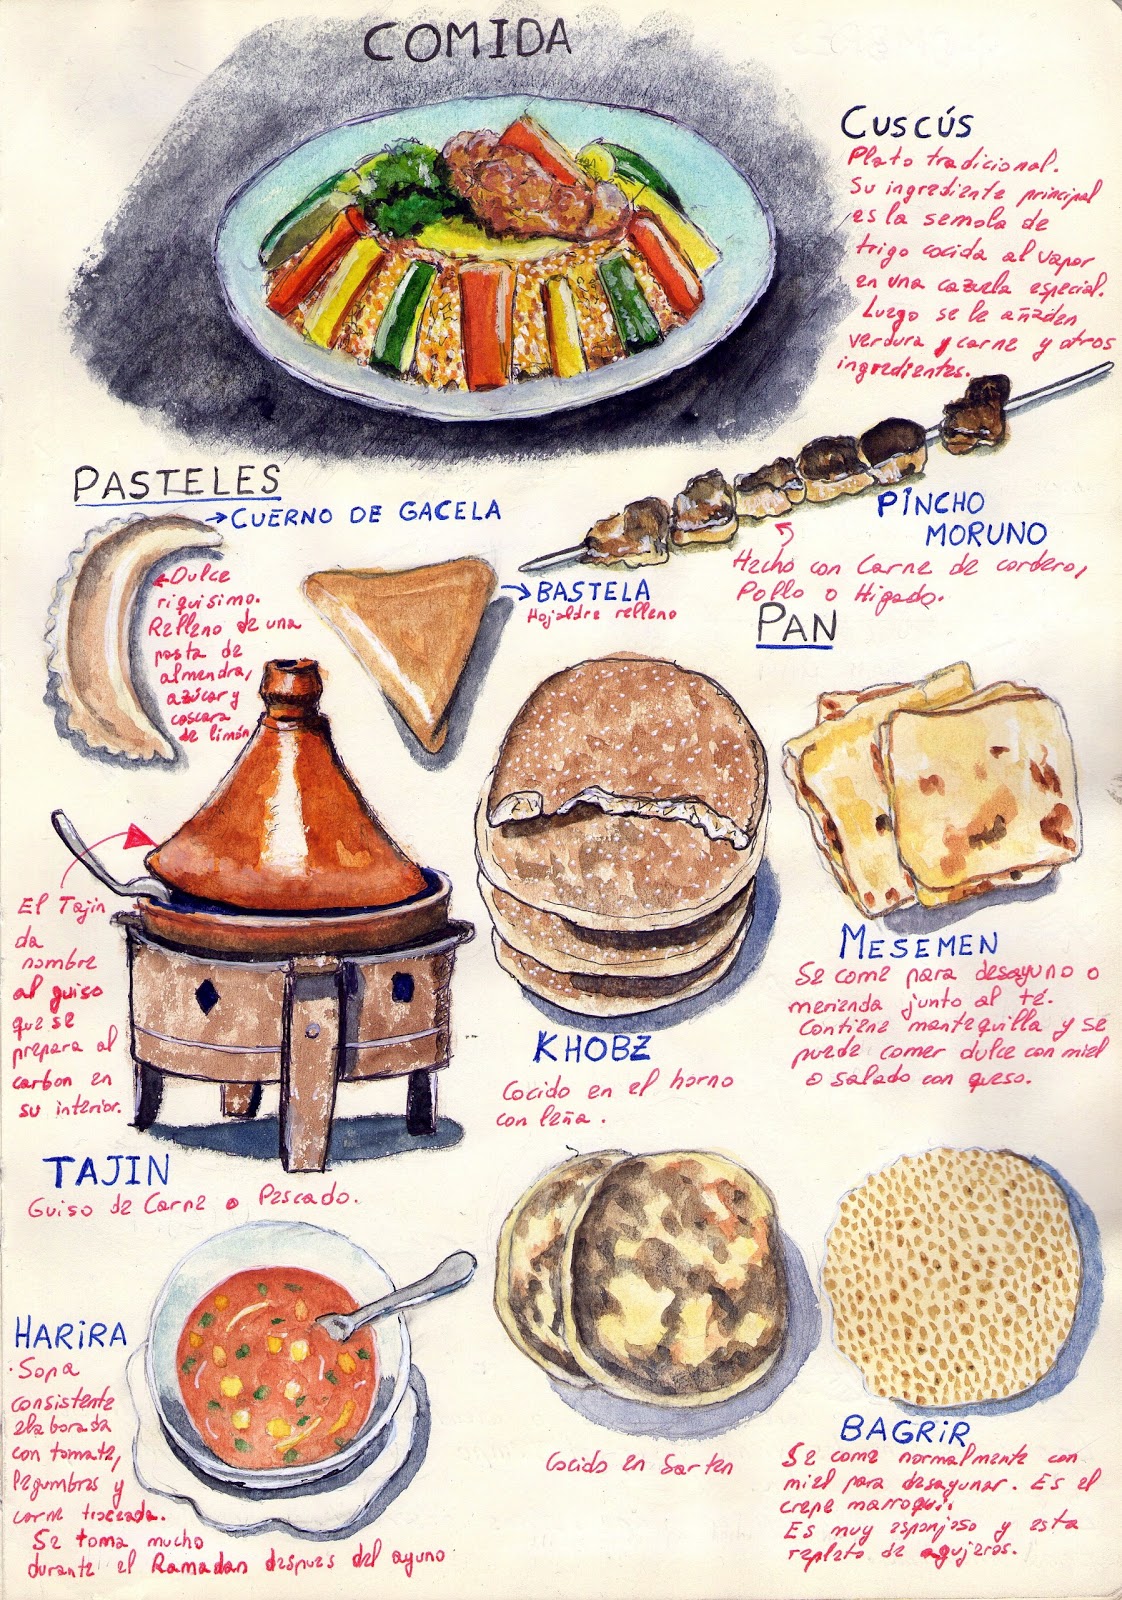 Comida tipica marroqui: qué es, y platos típicos